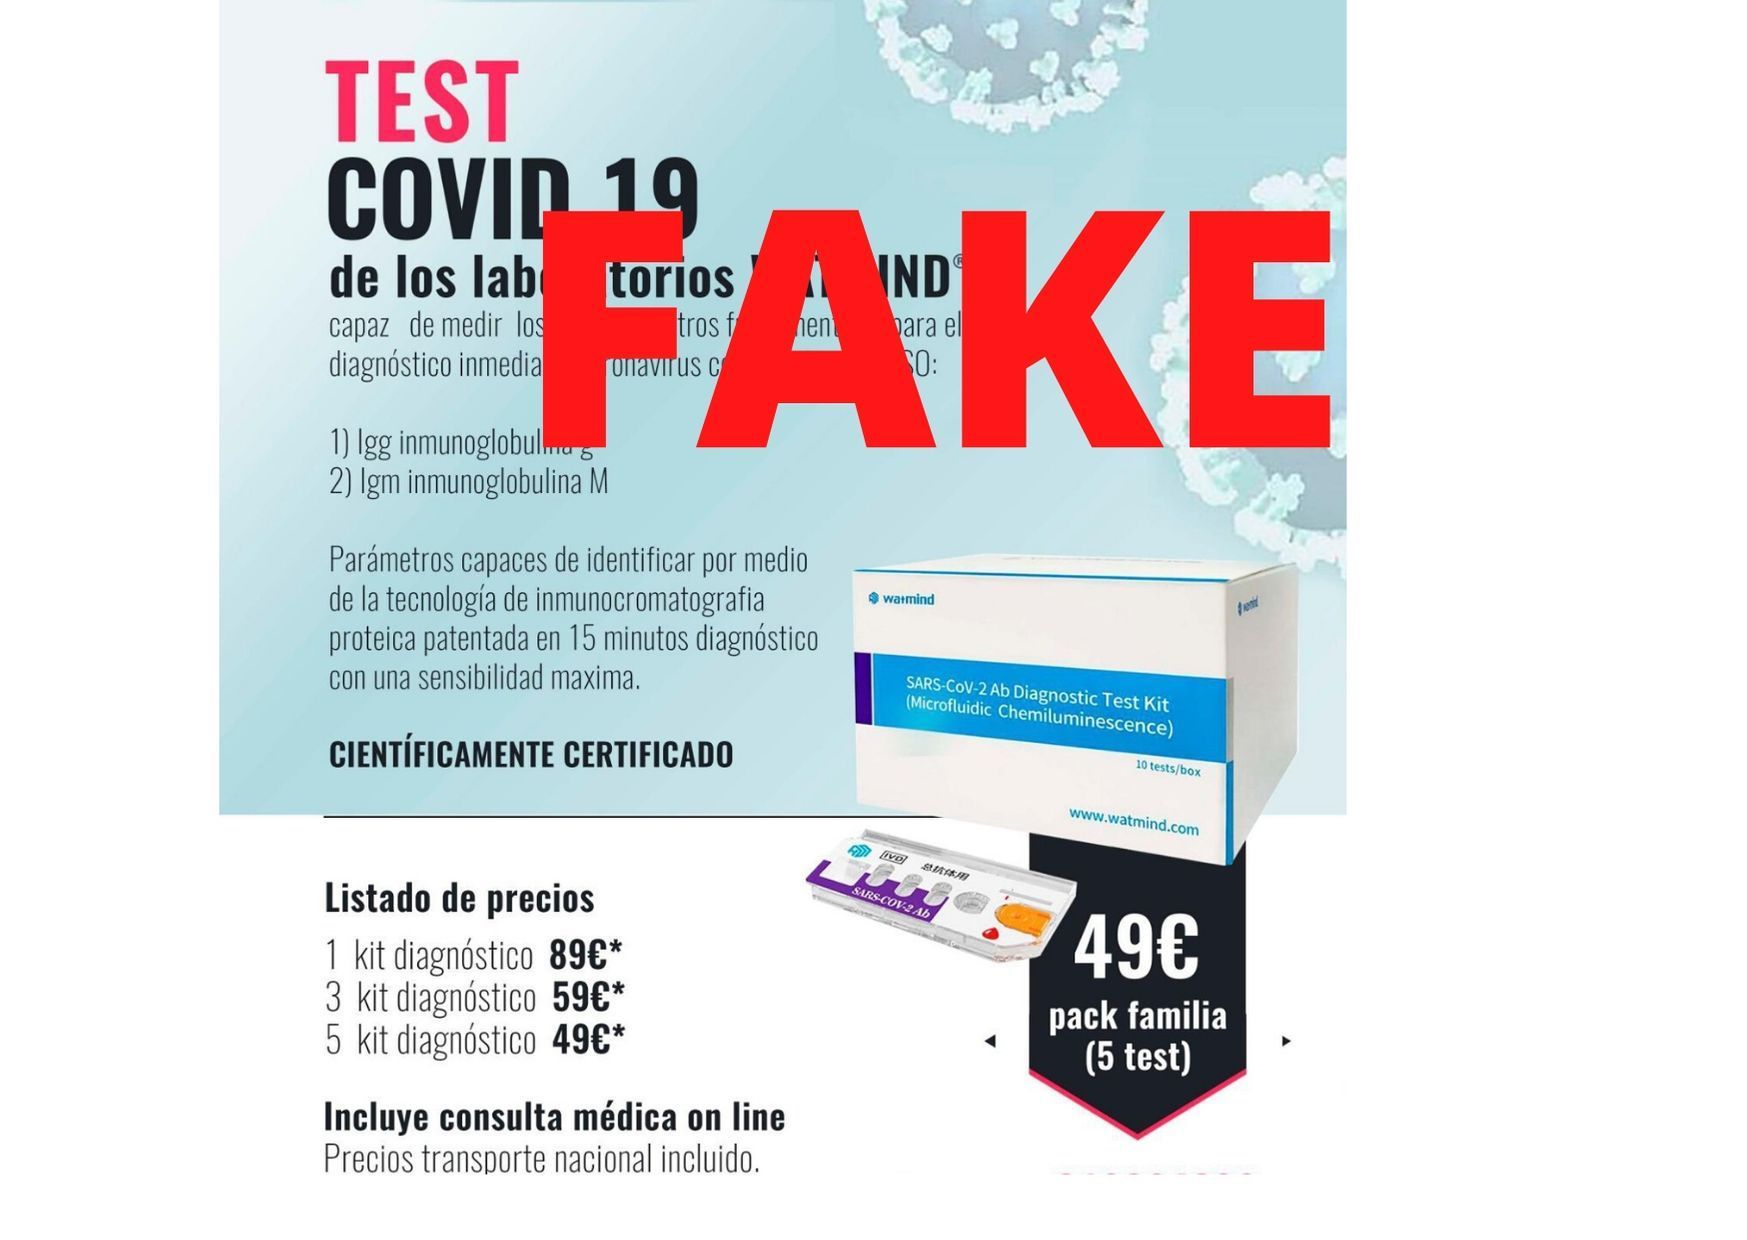 ¡Cuidado con las webs que ofrecen test rápidos de COVID-19! Algunas son un fraude